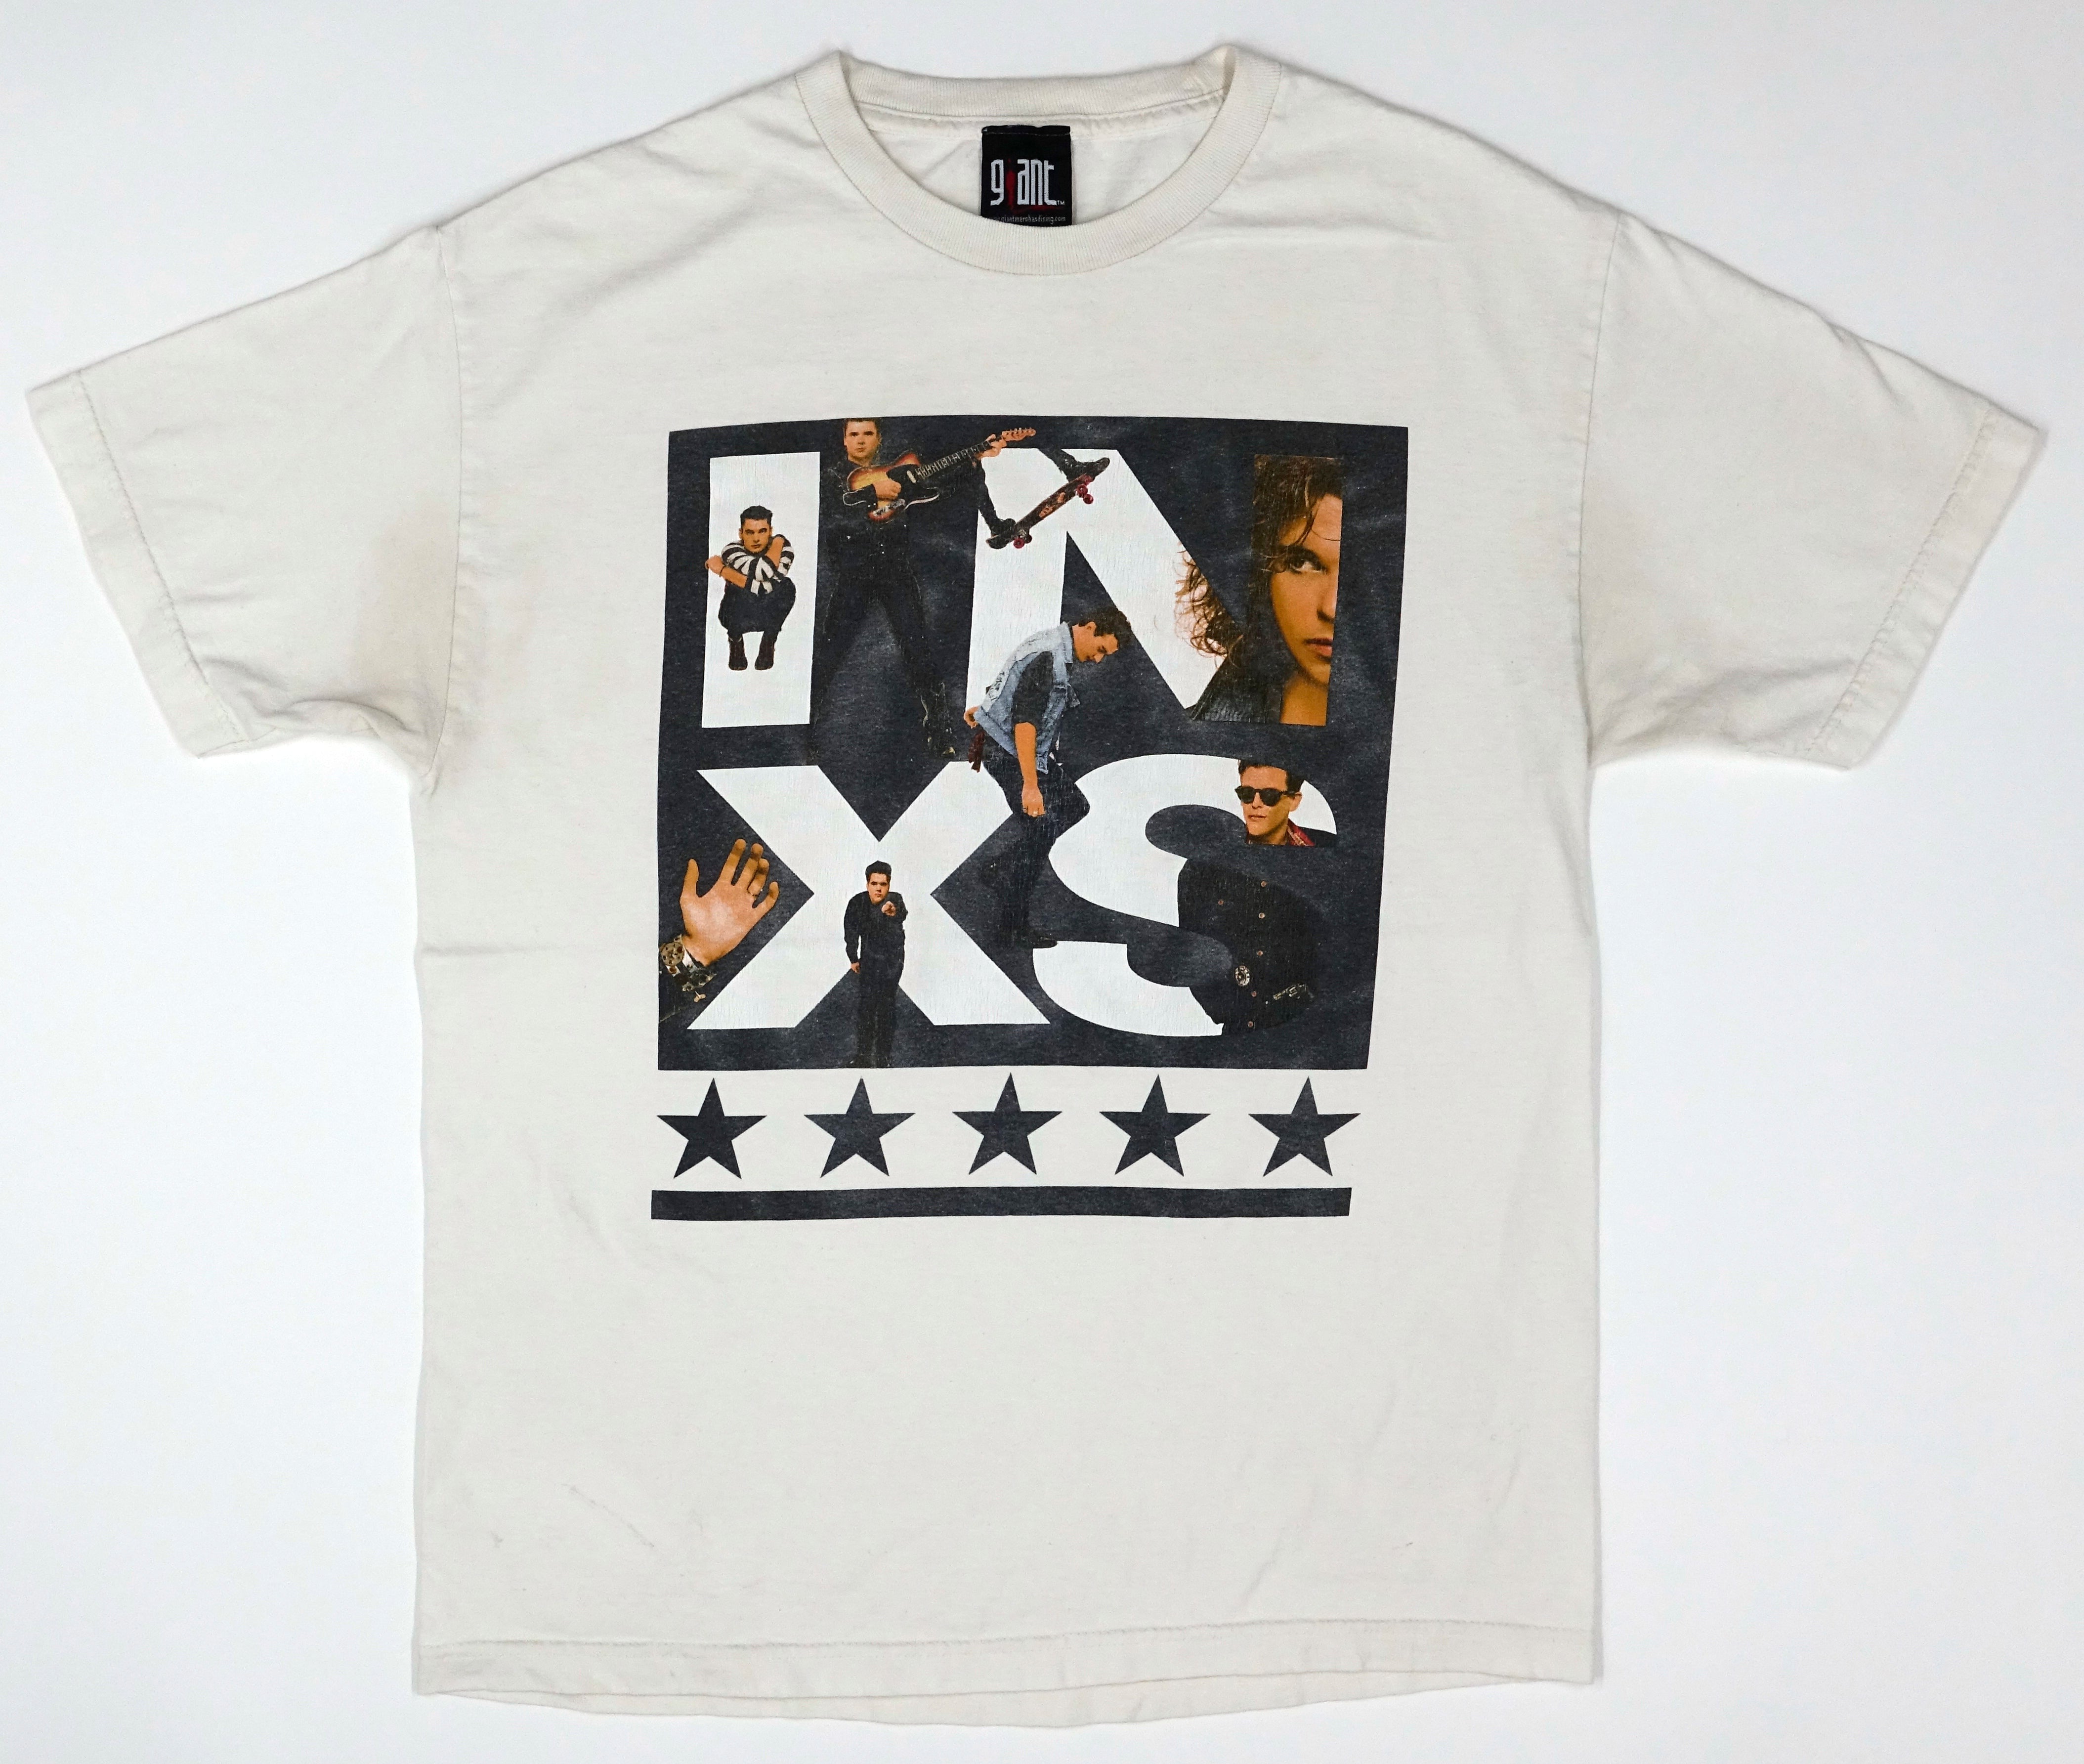 INXS - X 1991 Tour Shirt Size Large